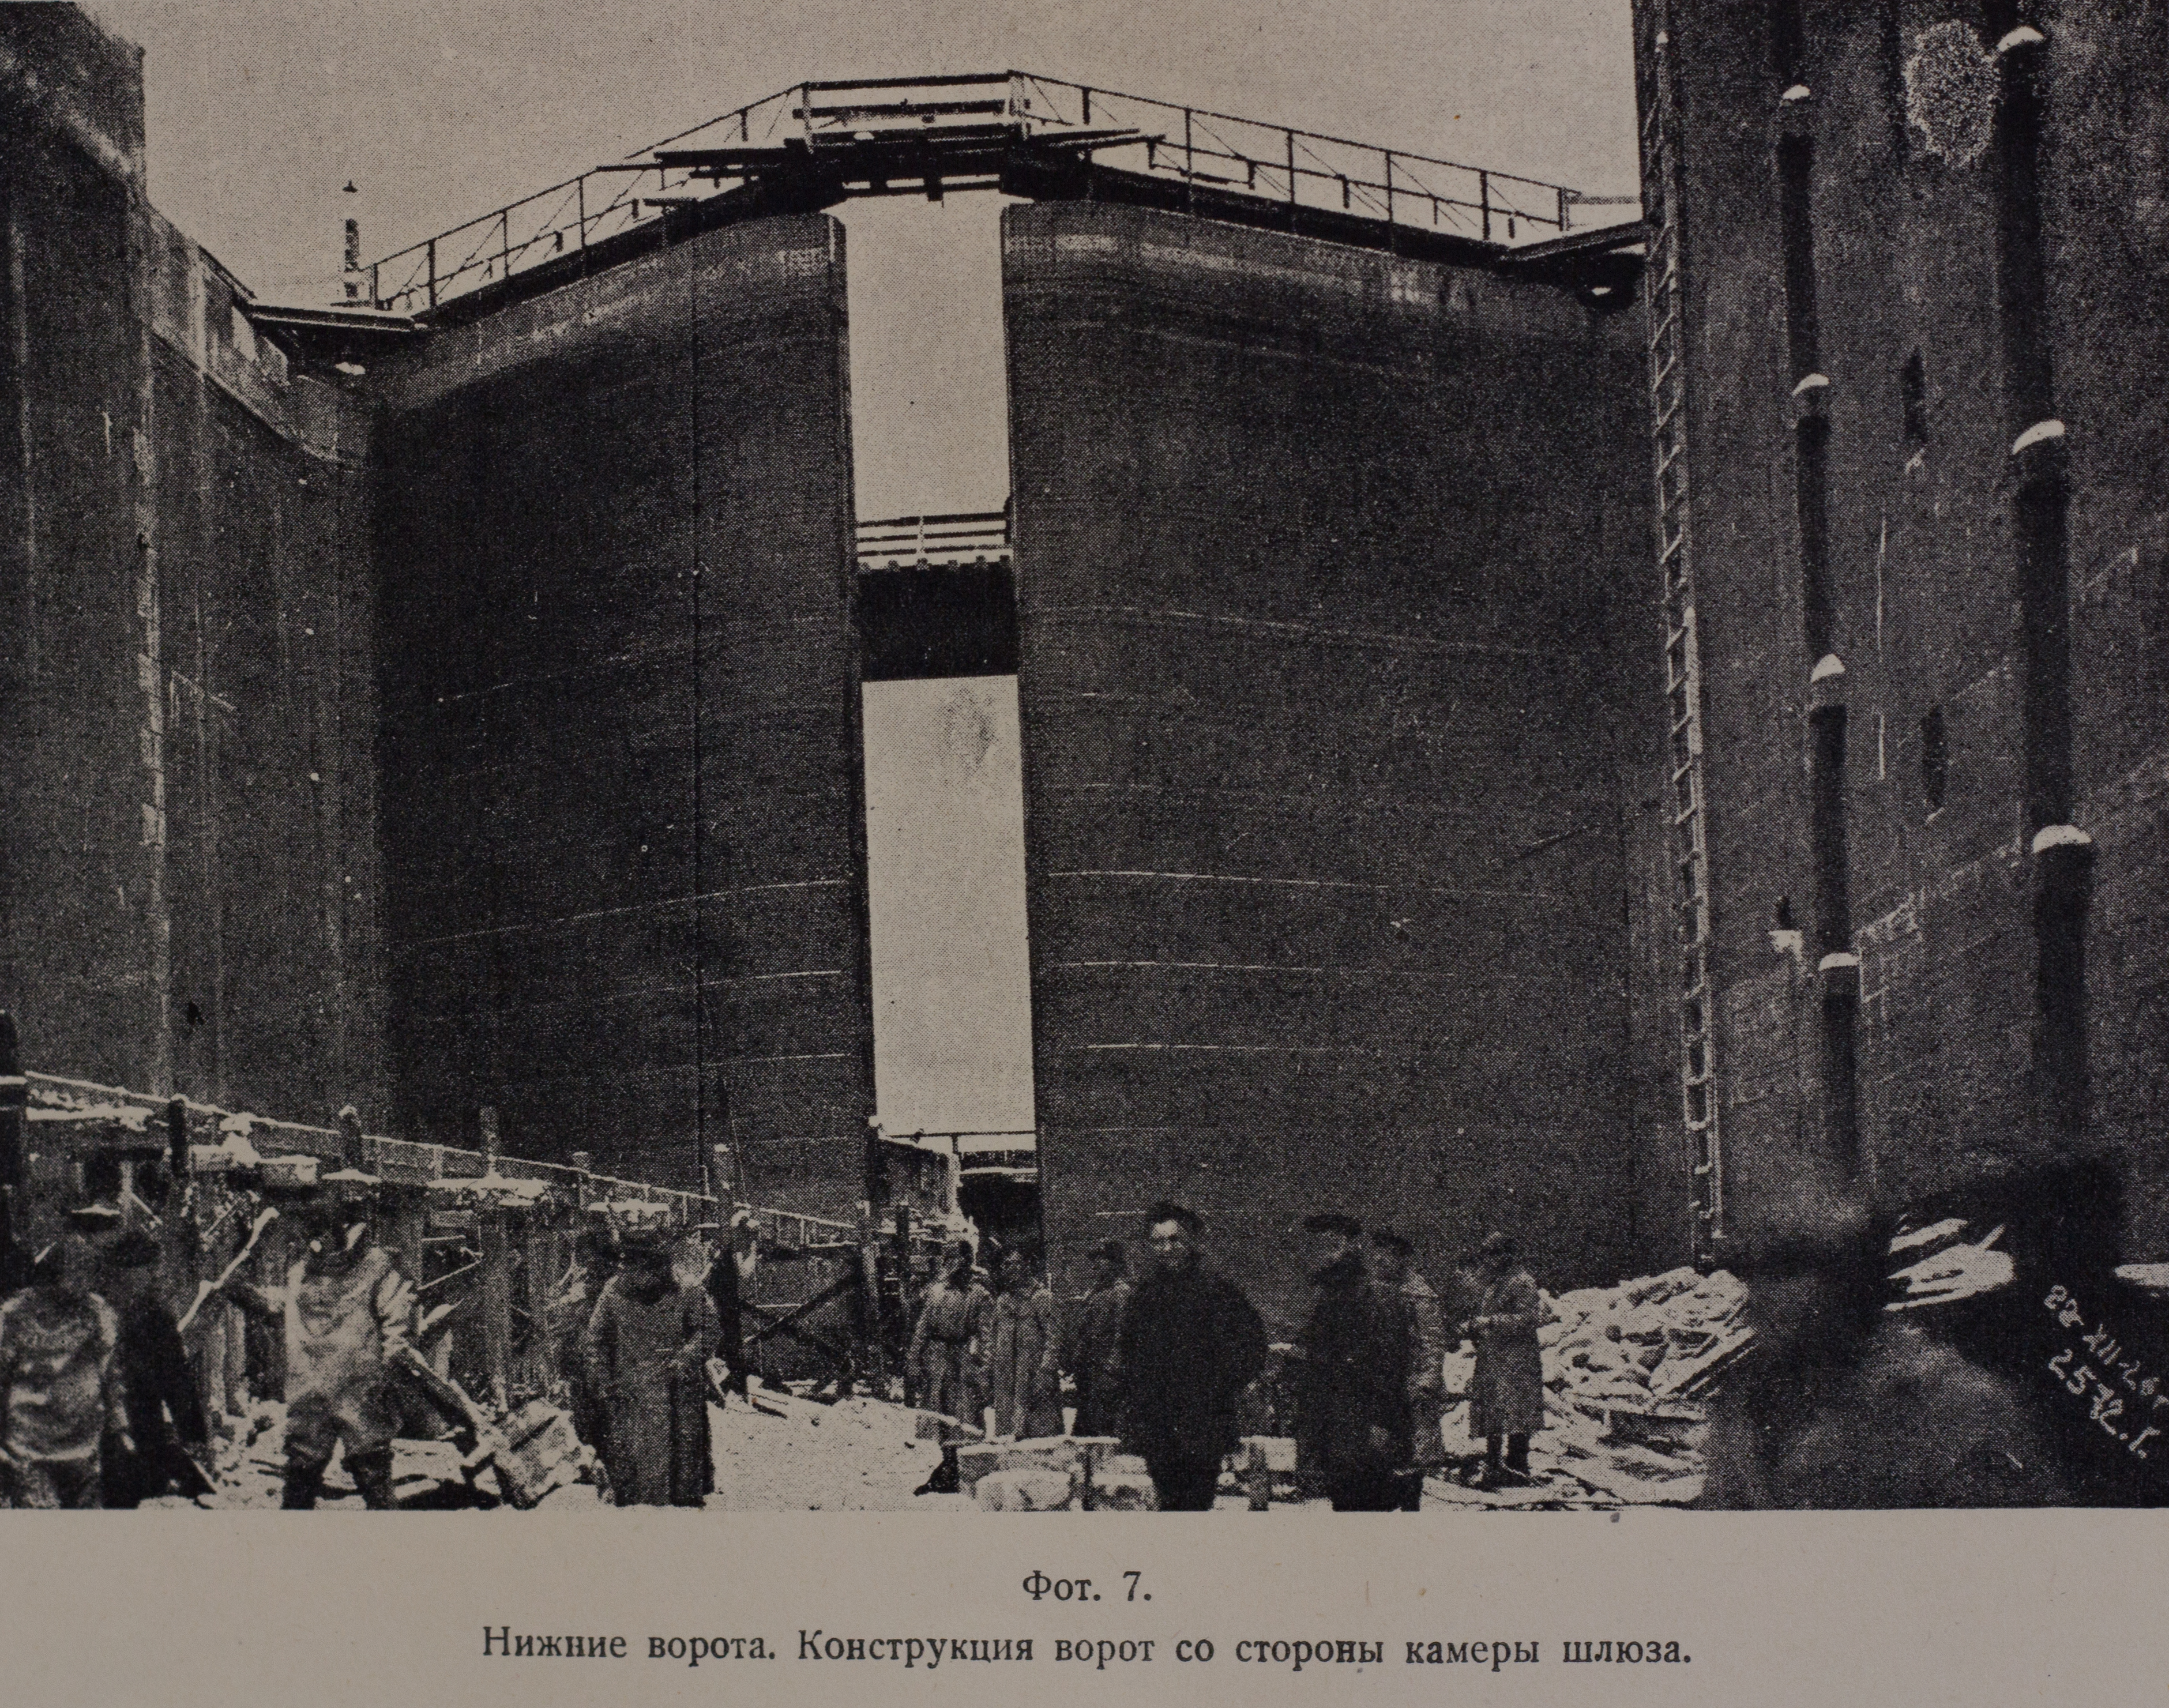 Нижние ворота. Конструкция ворот со стороны камеры шлюза (1926 г.)